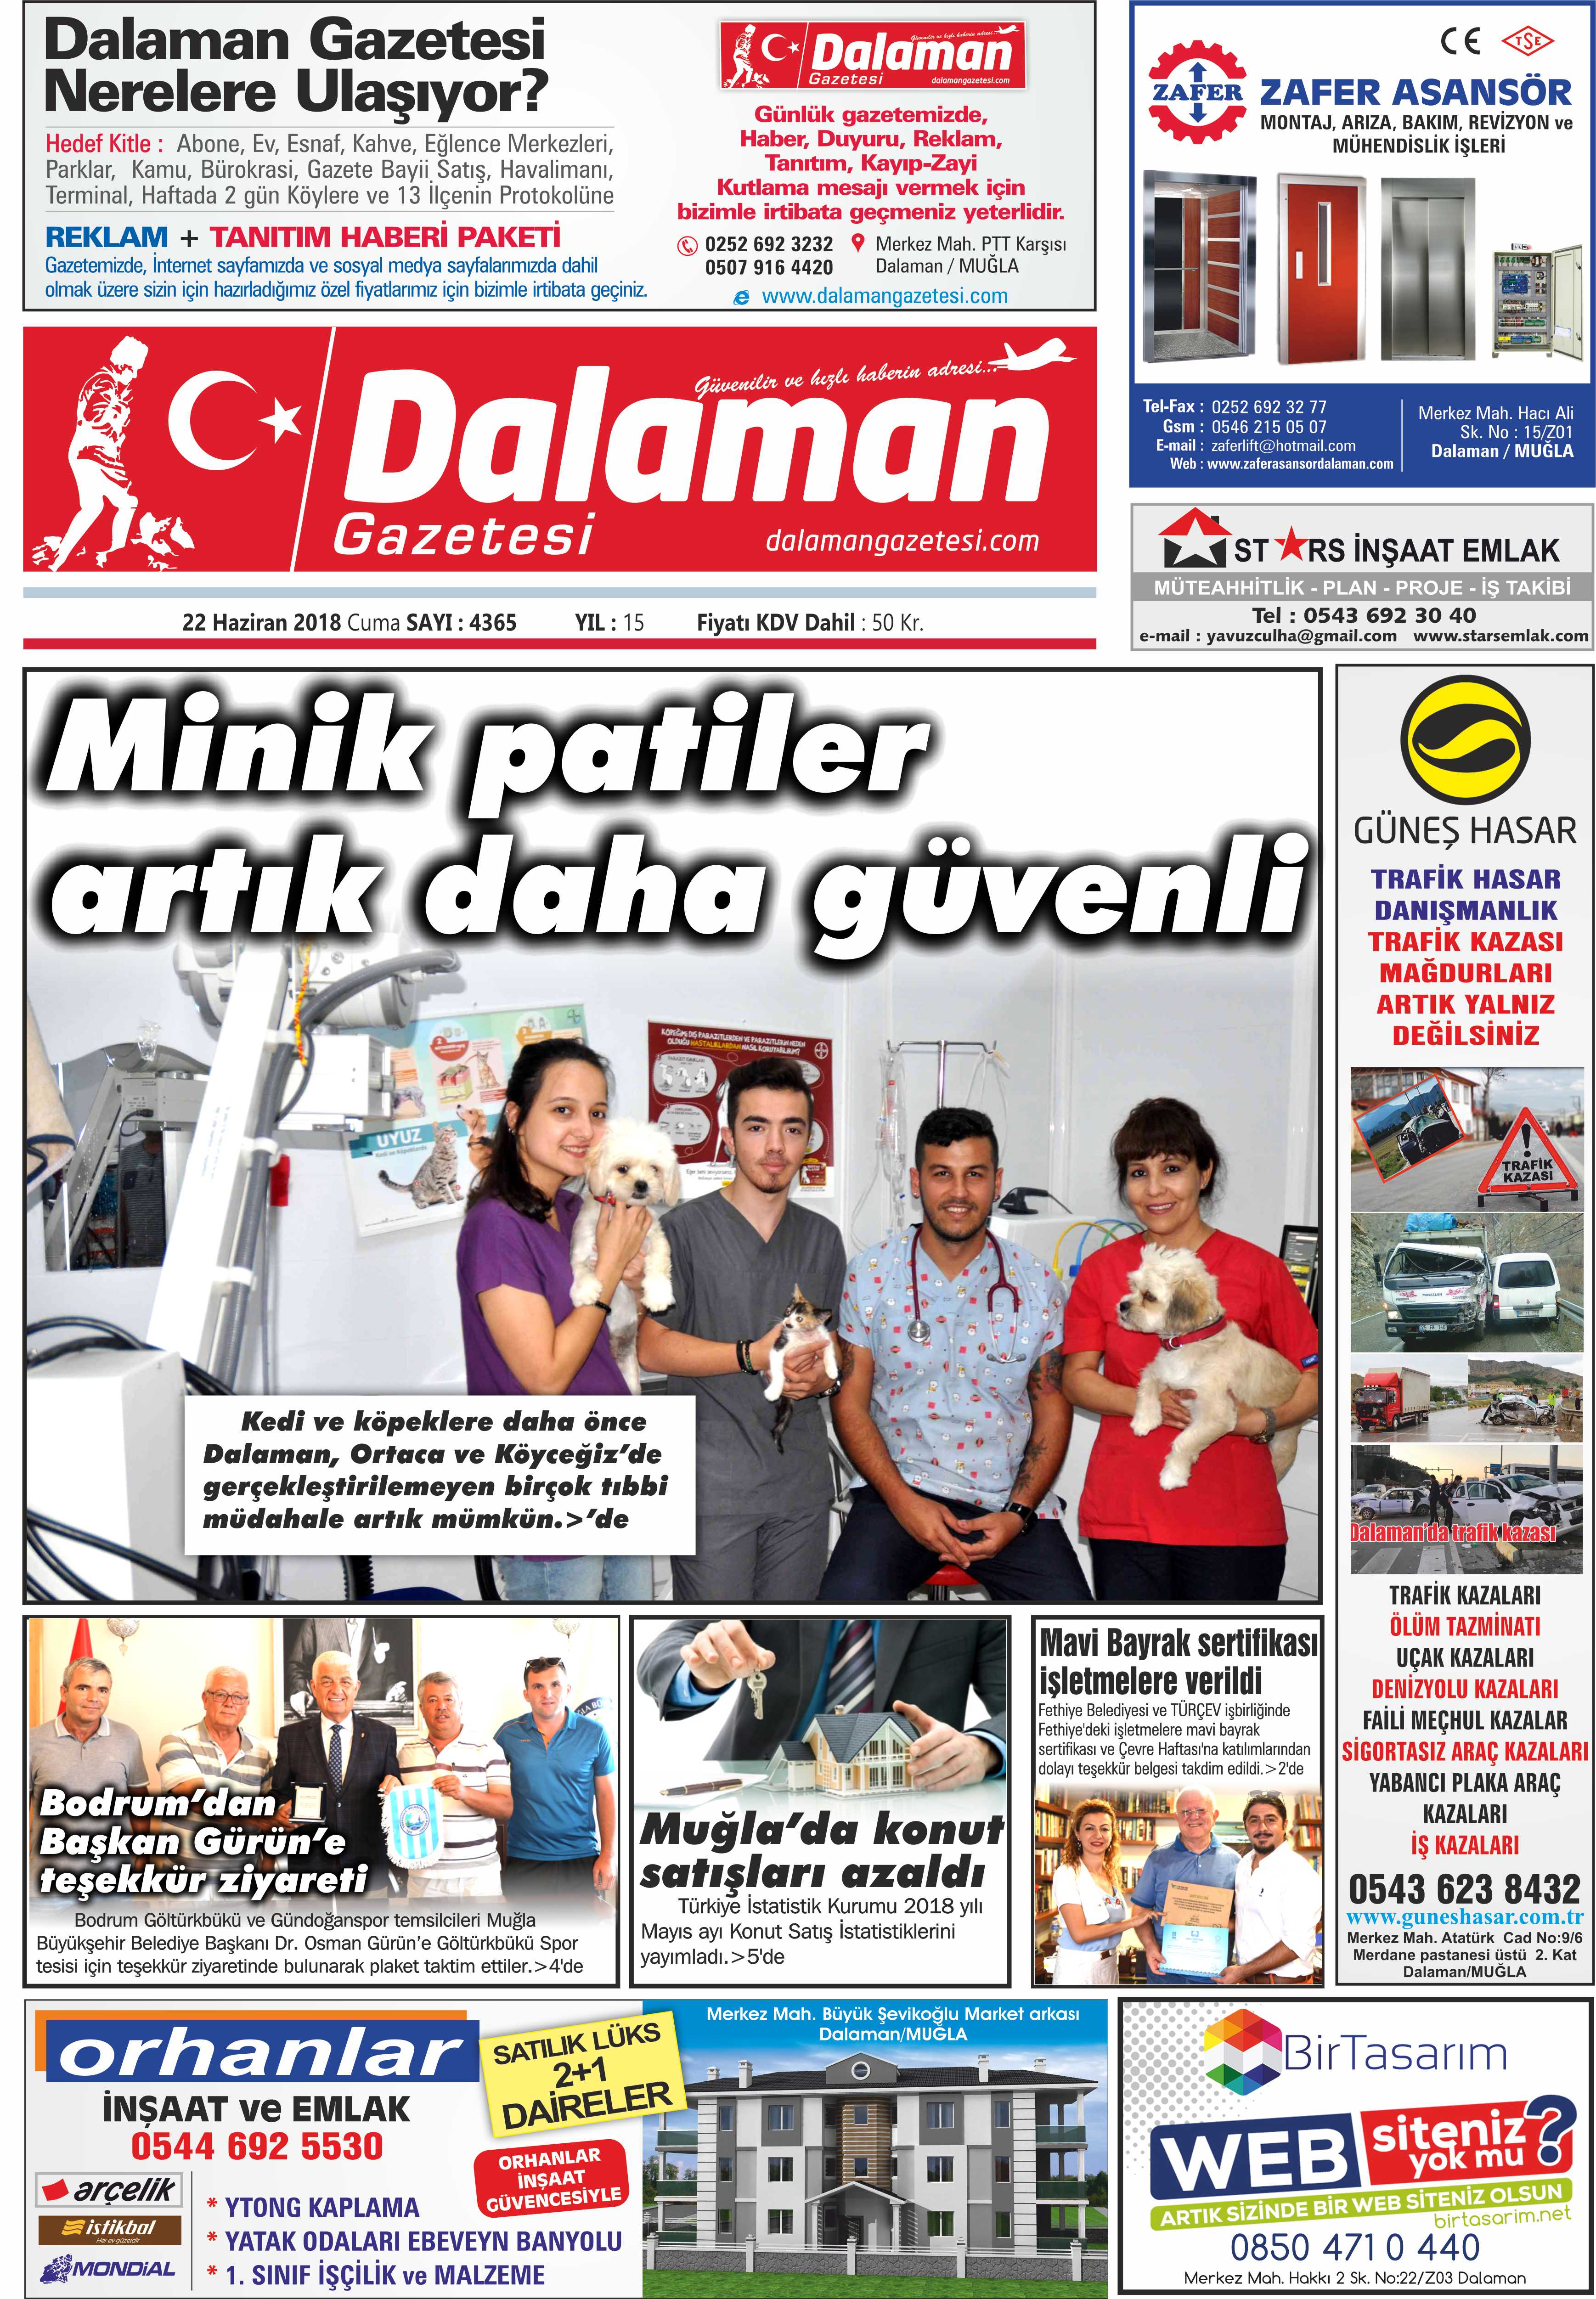 22.06.2018 0 - Dalaman Gazetesi'nden gündem başlıkları